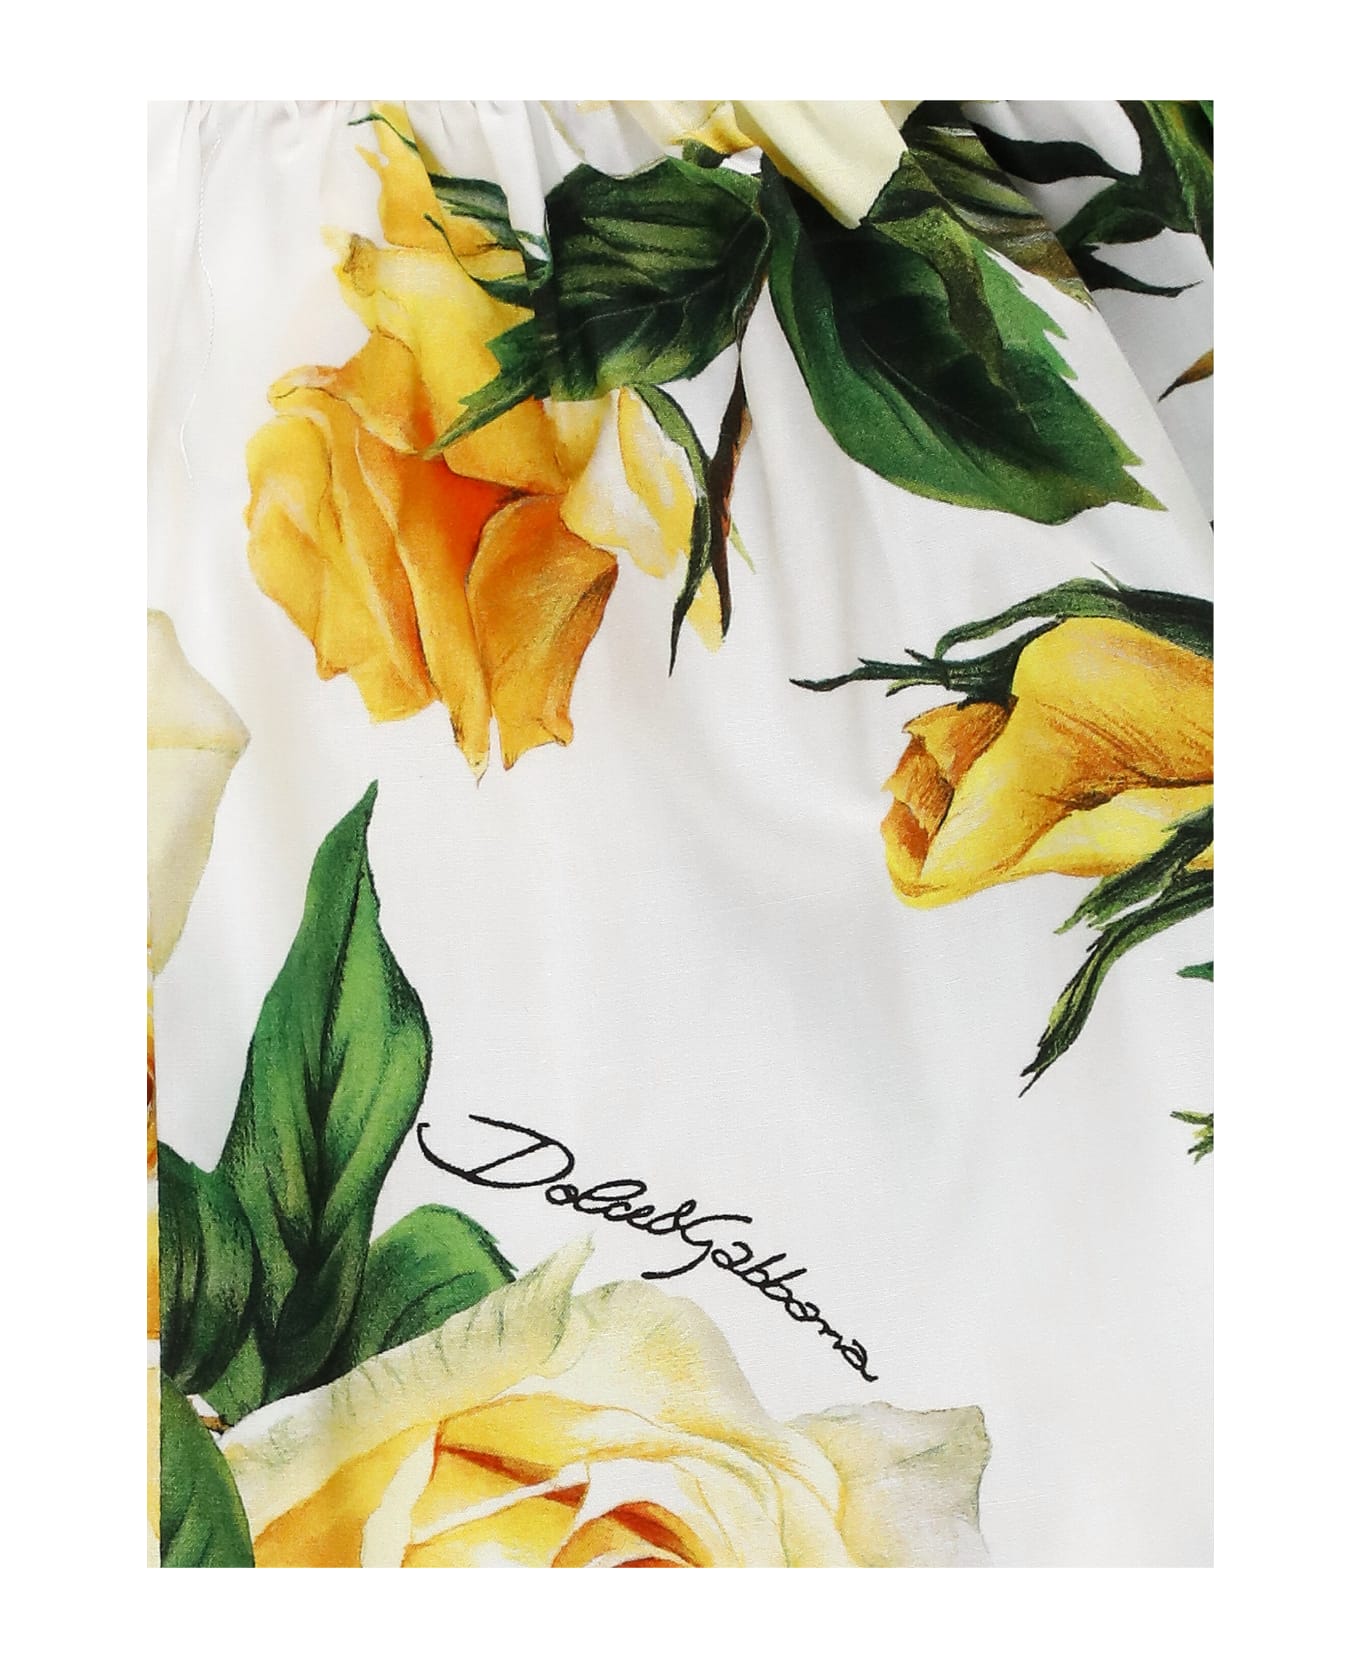 Dolce & Gabbana Flowering Skirt - White